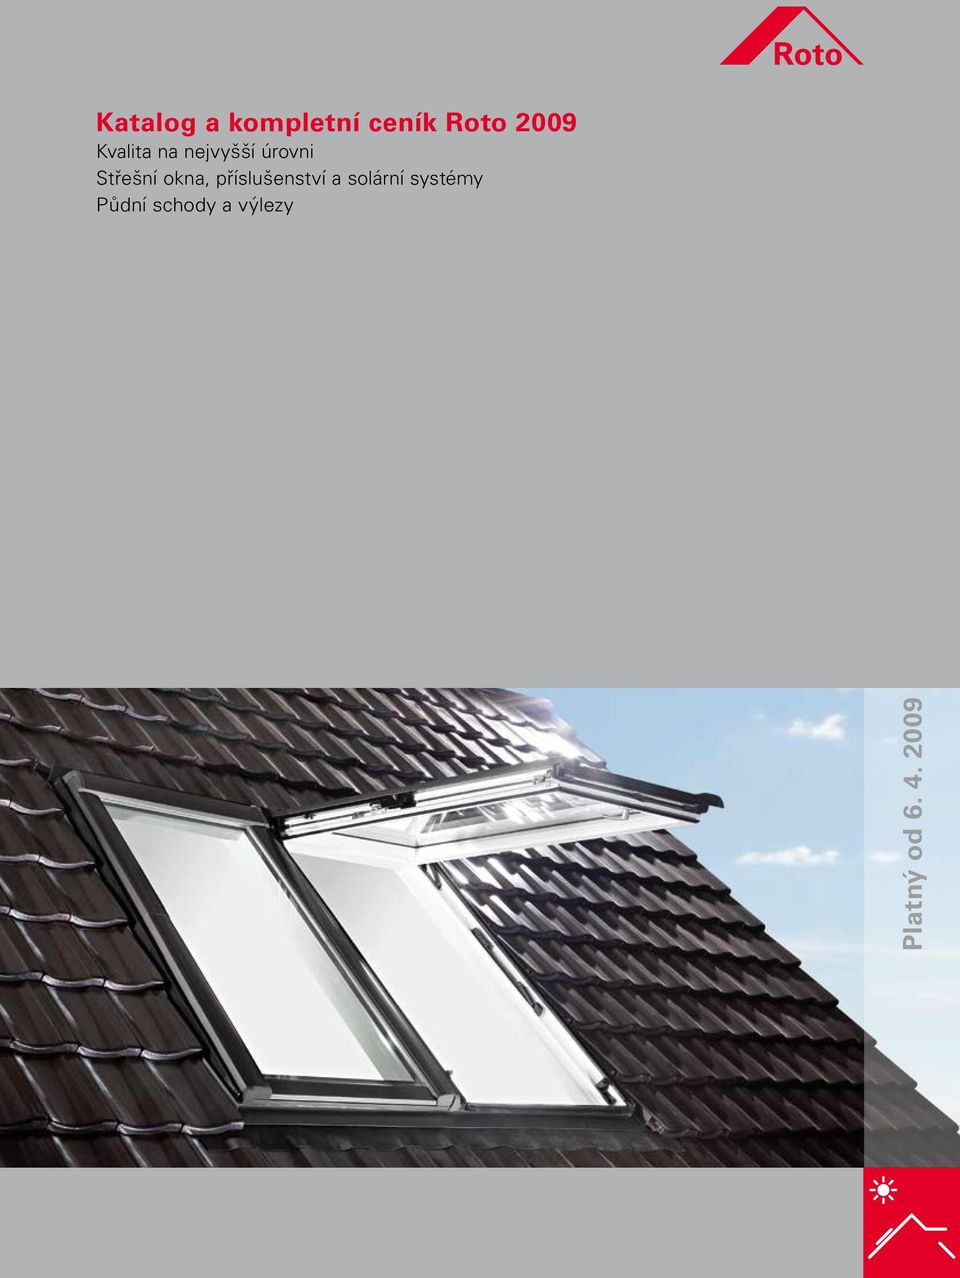 okna, příslušenství a solární systémy